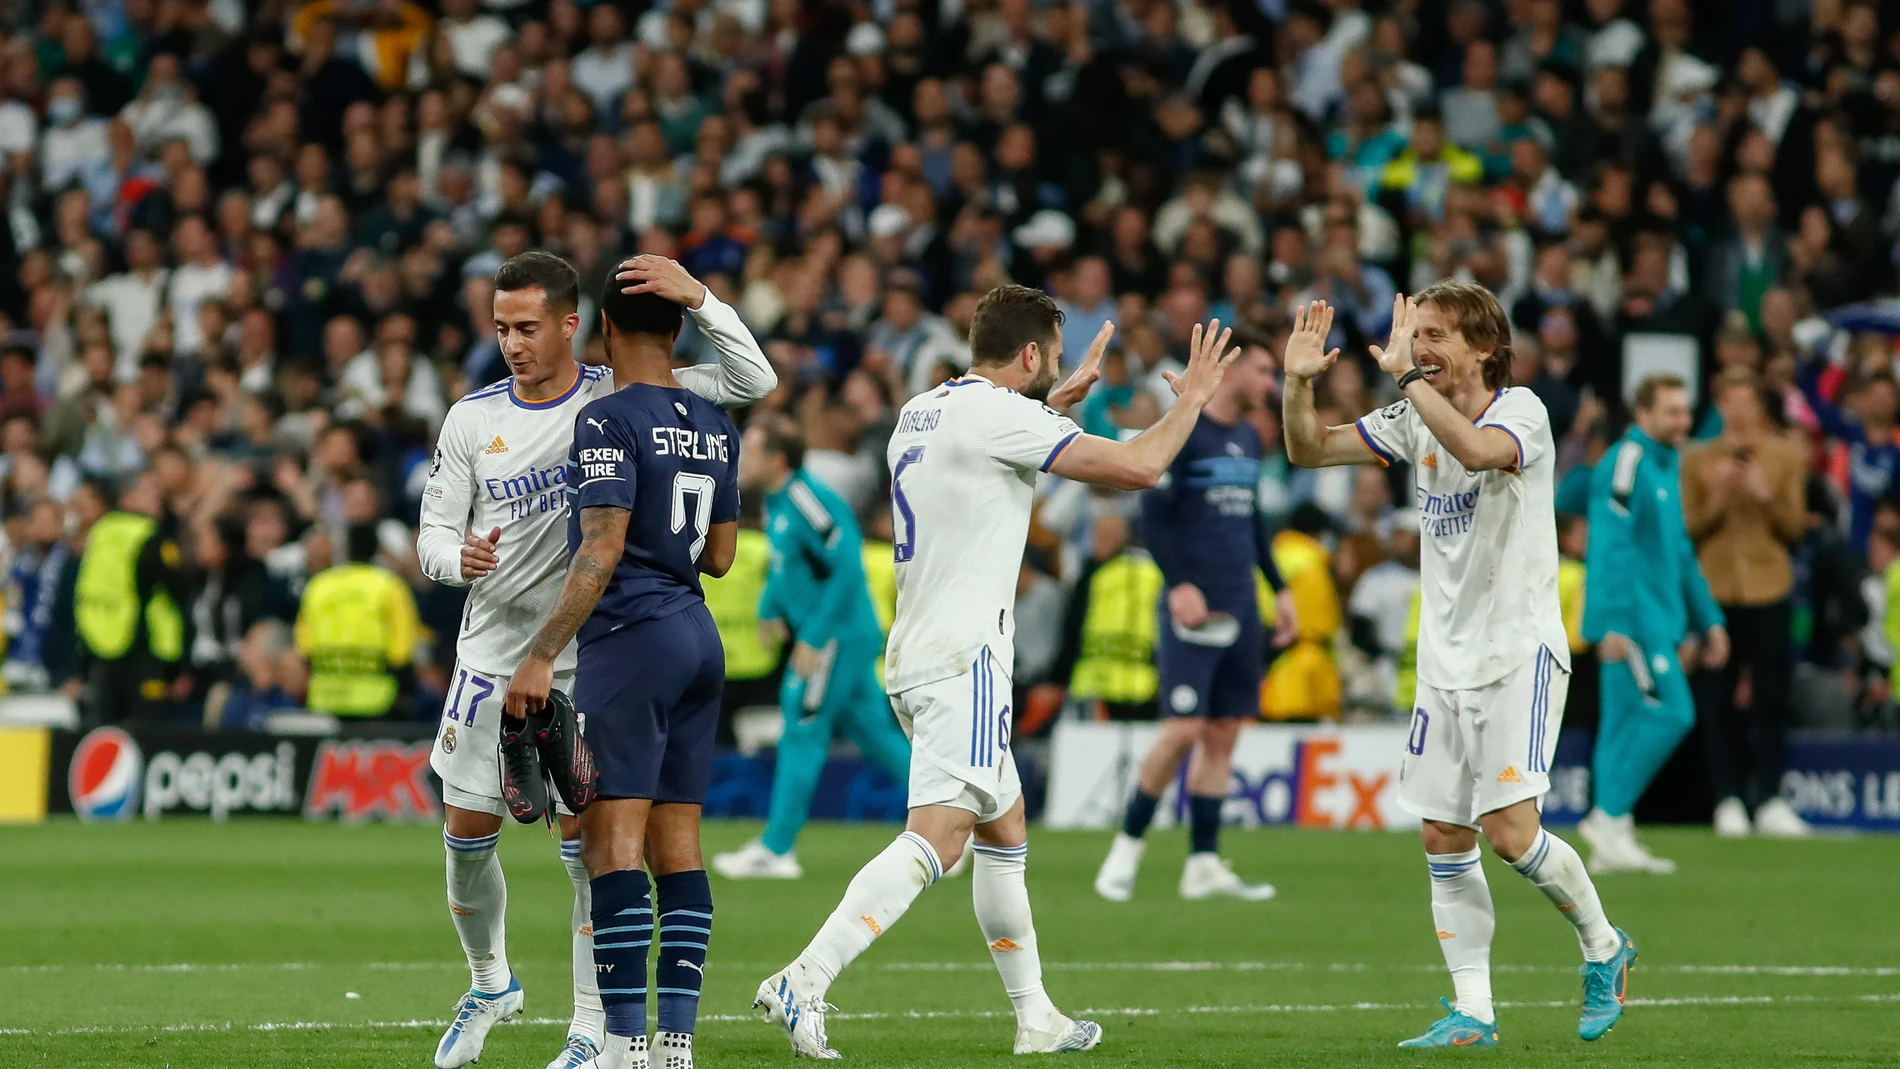 Los jugadores del Real Madrid celebran la remontada contra el Manchester City en Champions